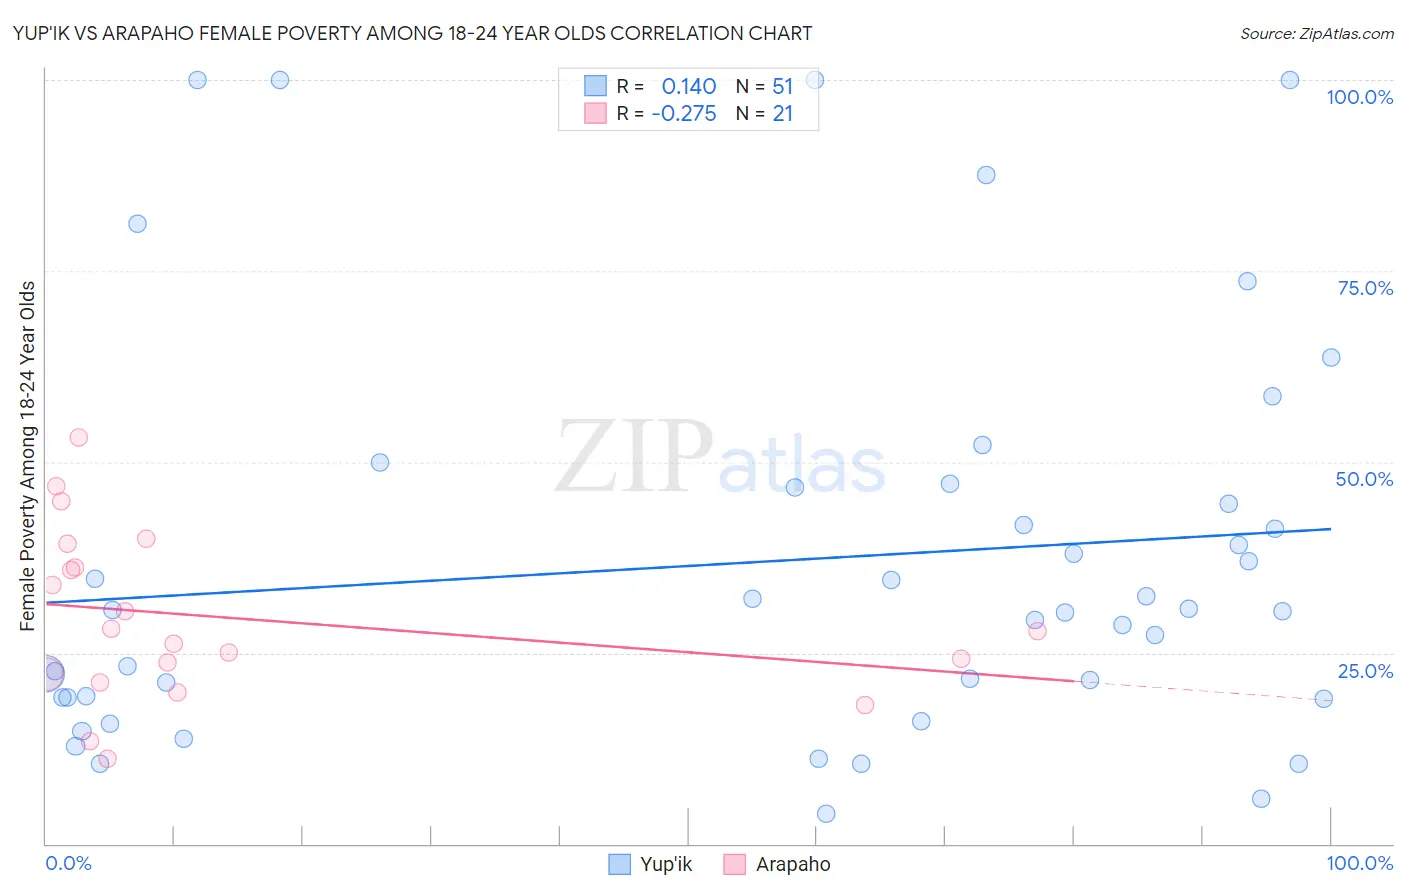 Yup'ik vs Arapaho Female Poverty Among 18-24 Year Olds